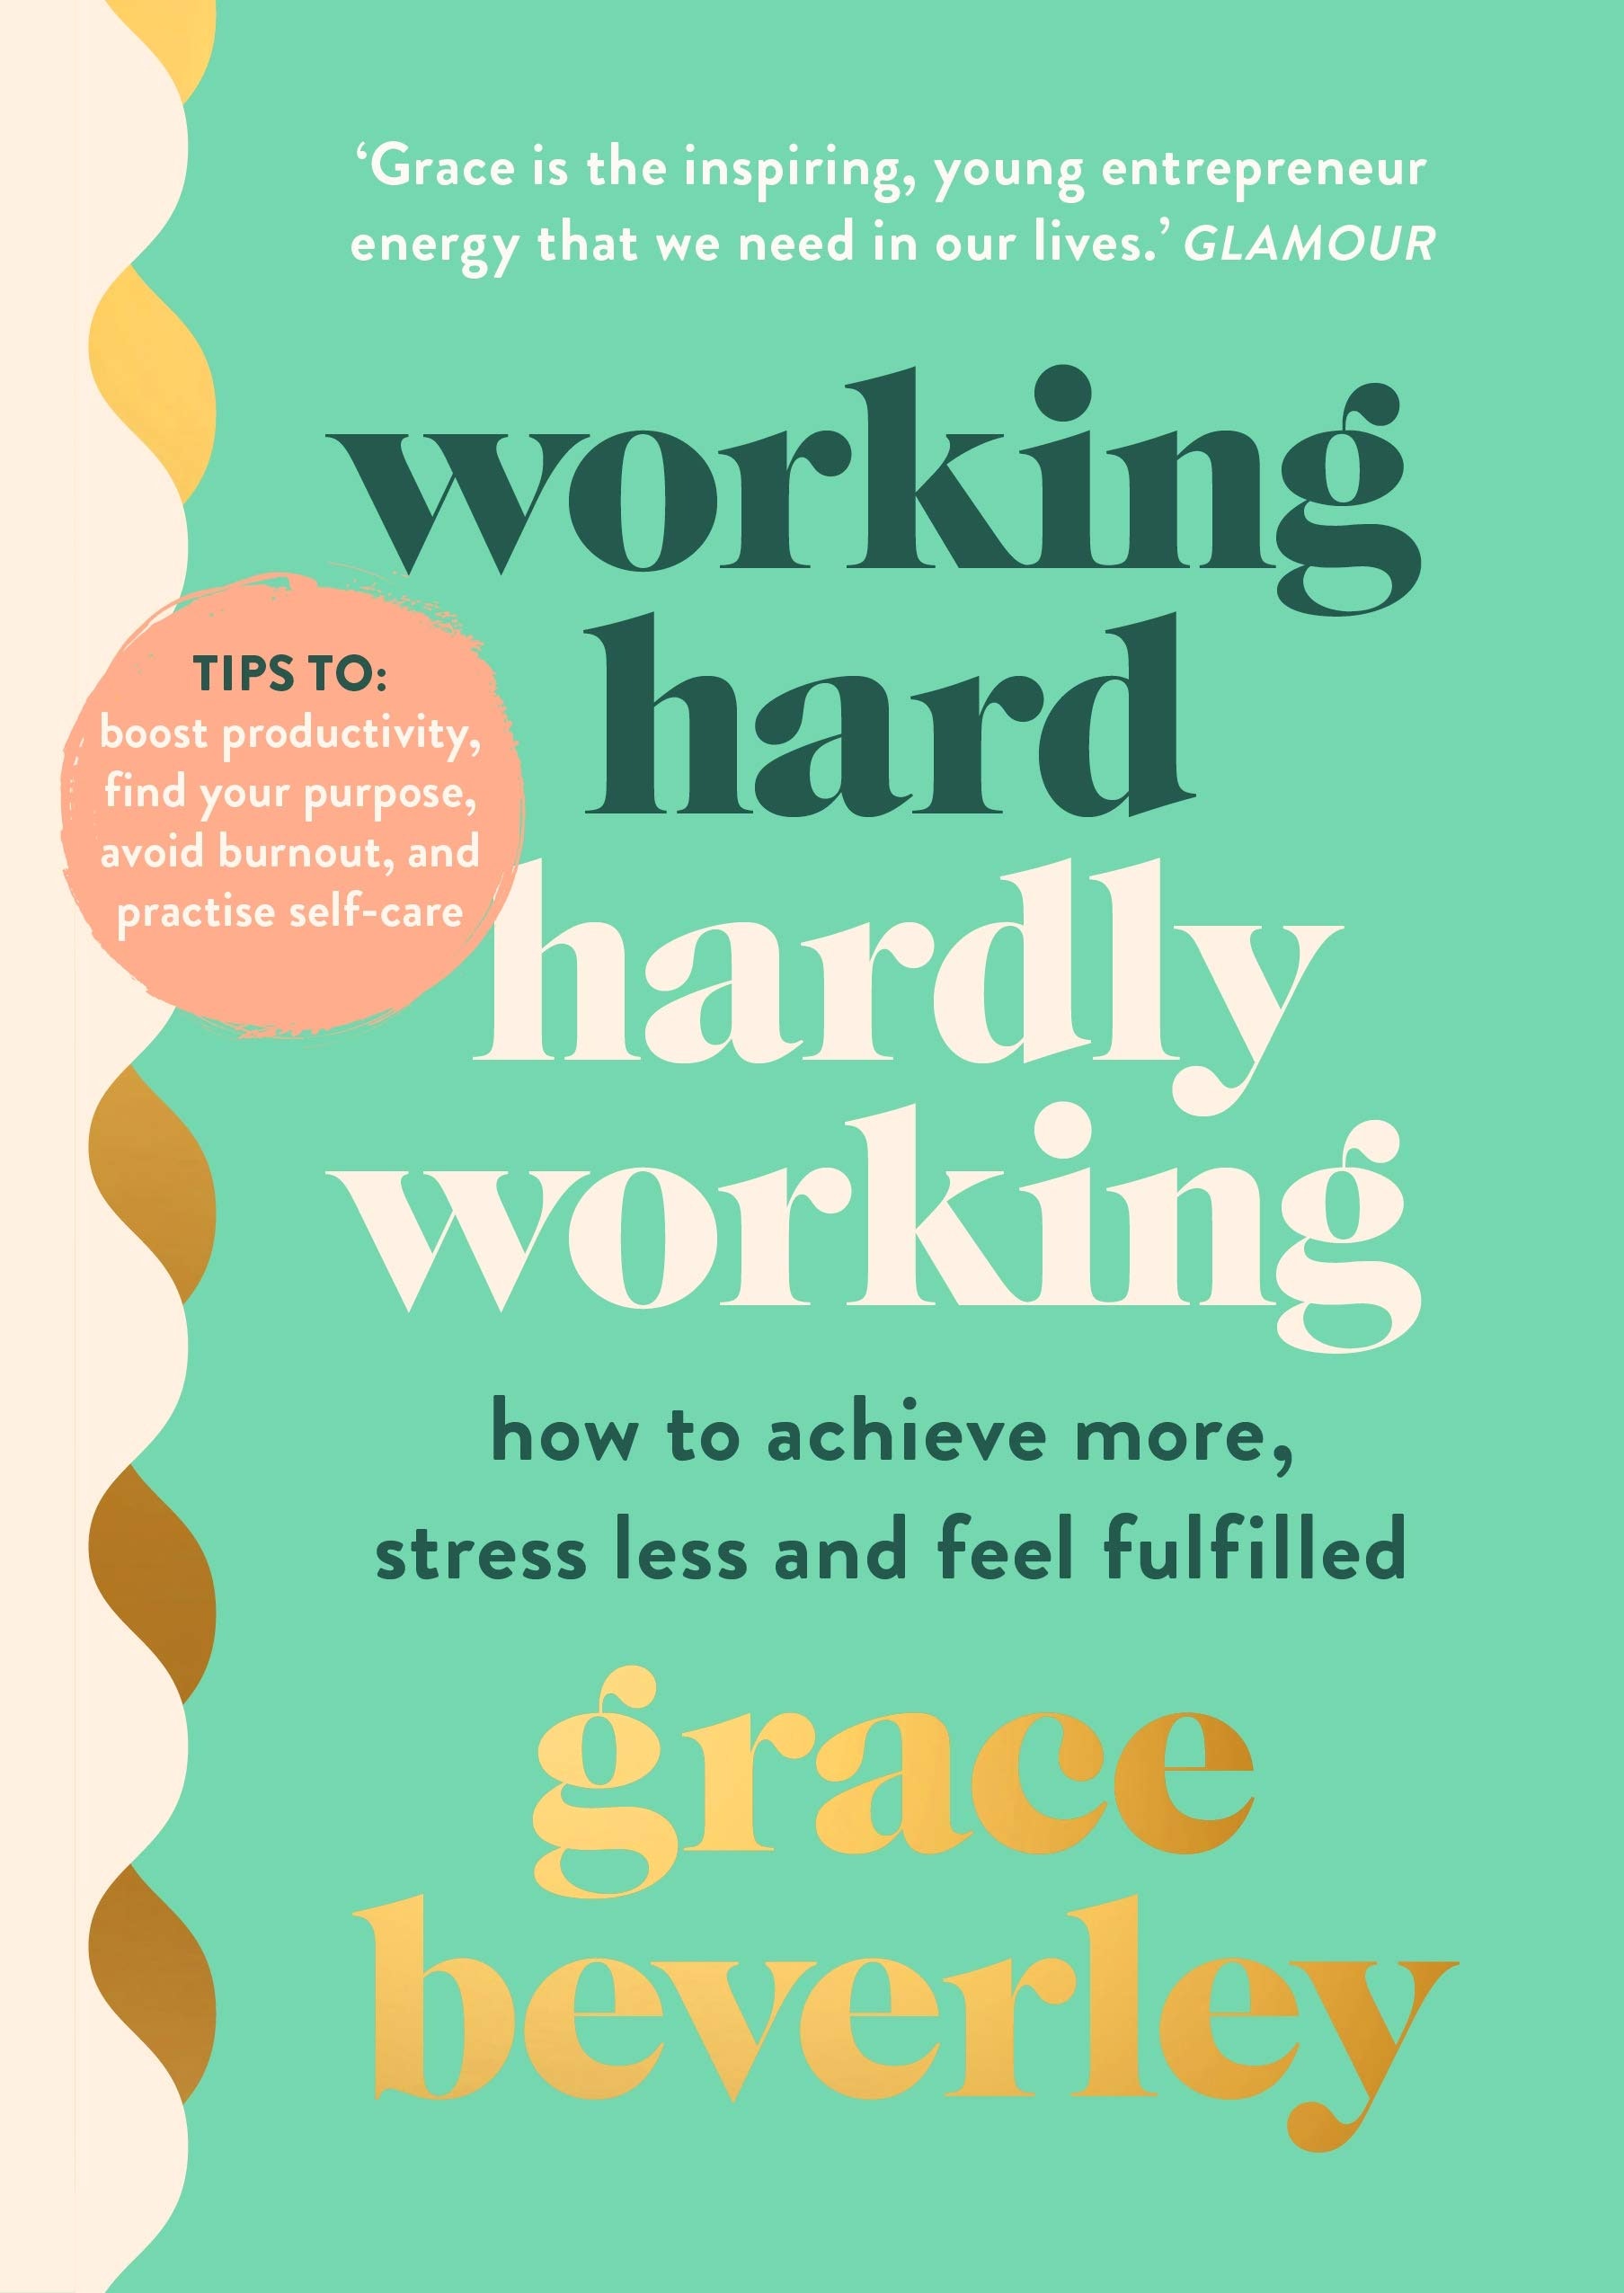 Πώς να είστε παραγωγικοί και να διατηρήσετε την ψυχική υγεία, σύμφωνα με την Grace Beverley